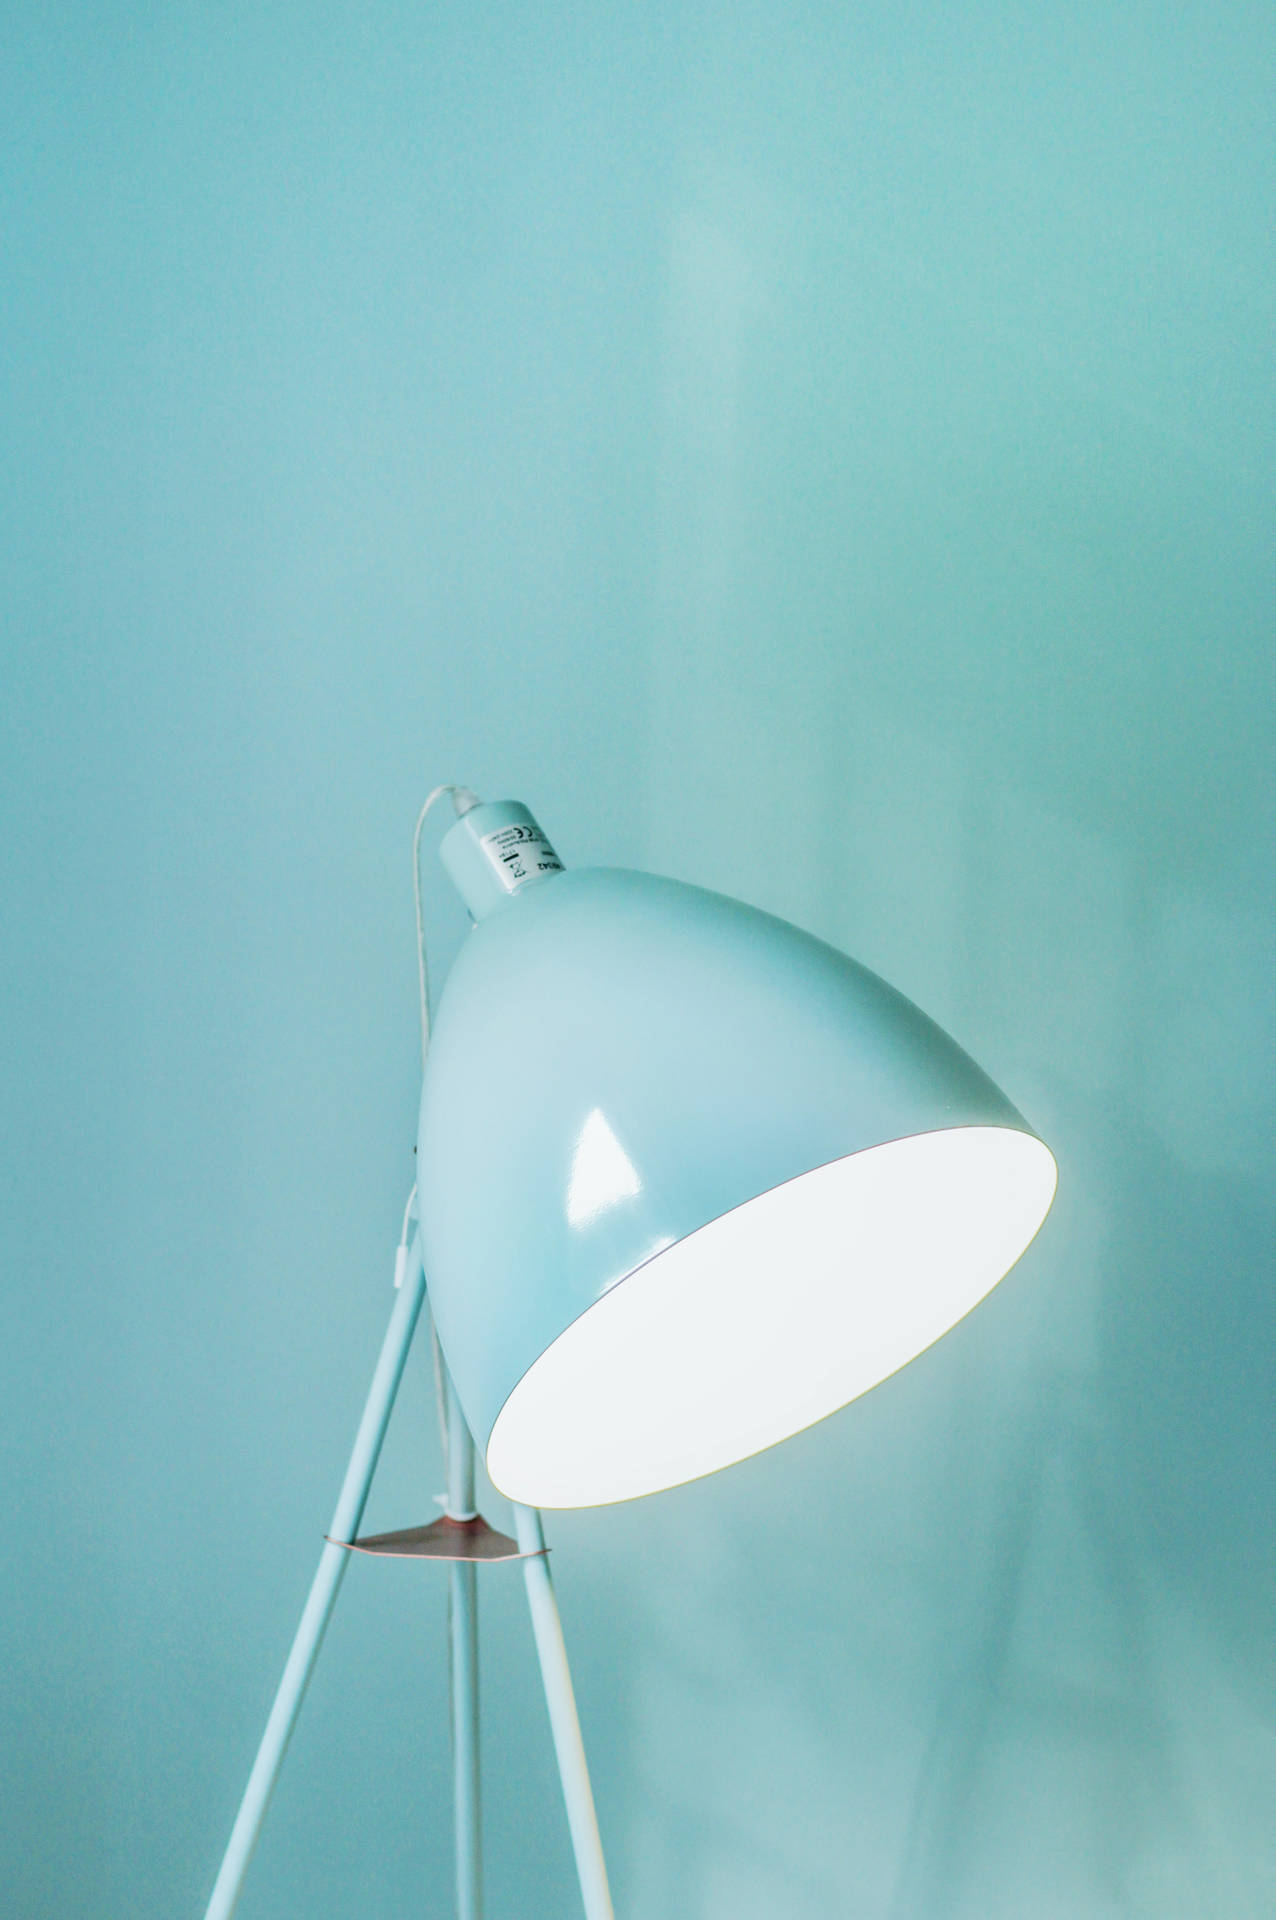 Light Blue Aesthetic Standing Lamp Background